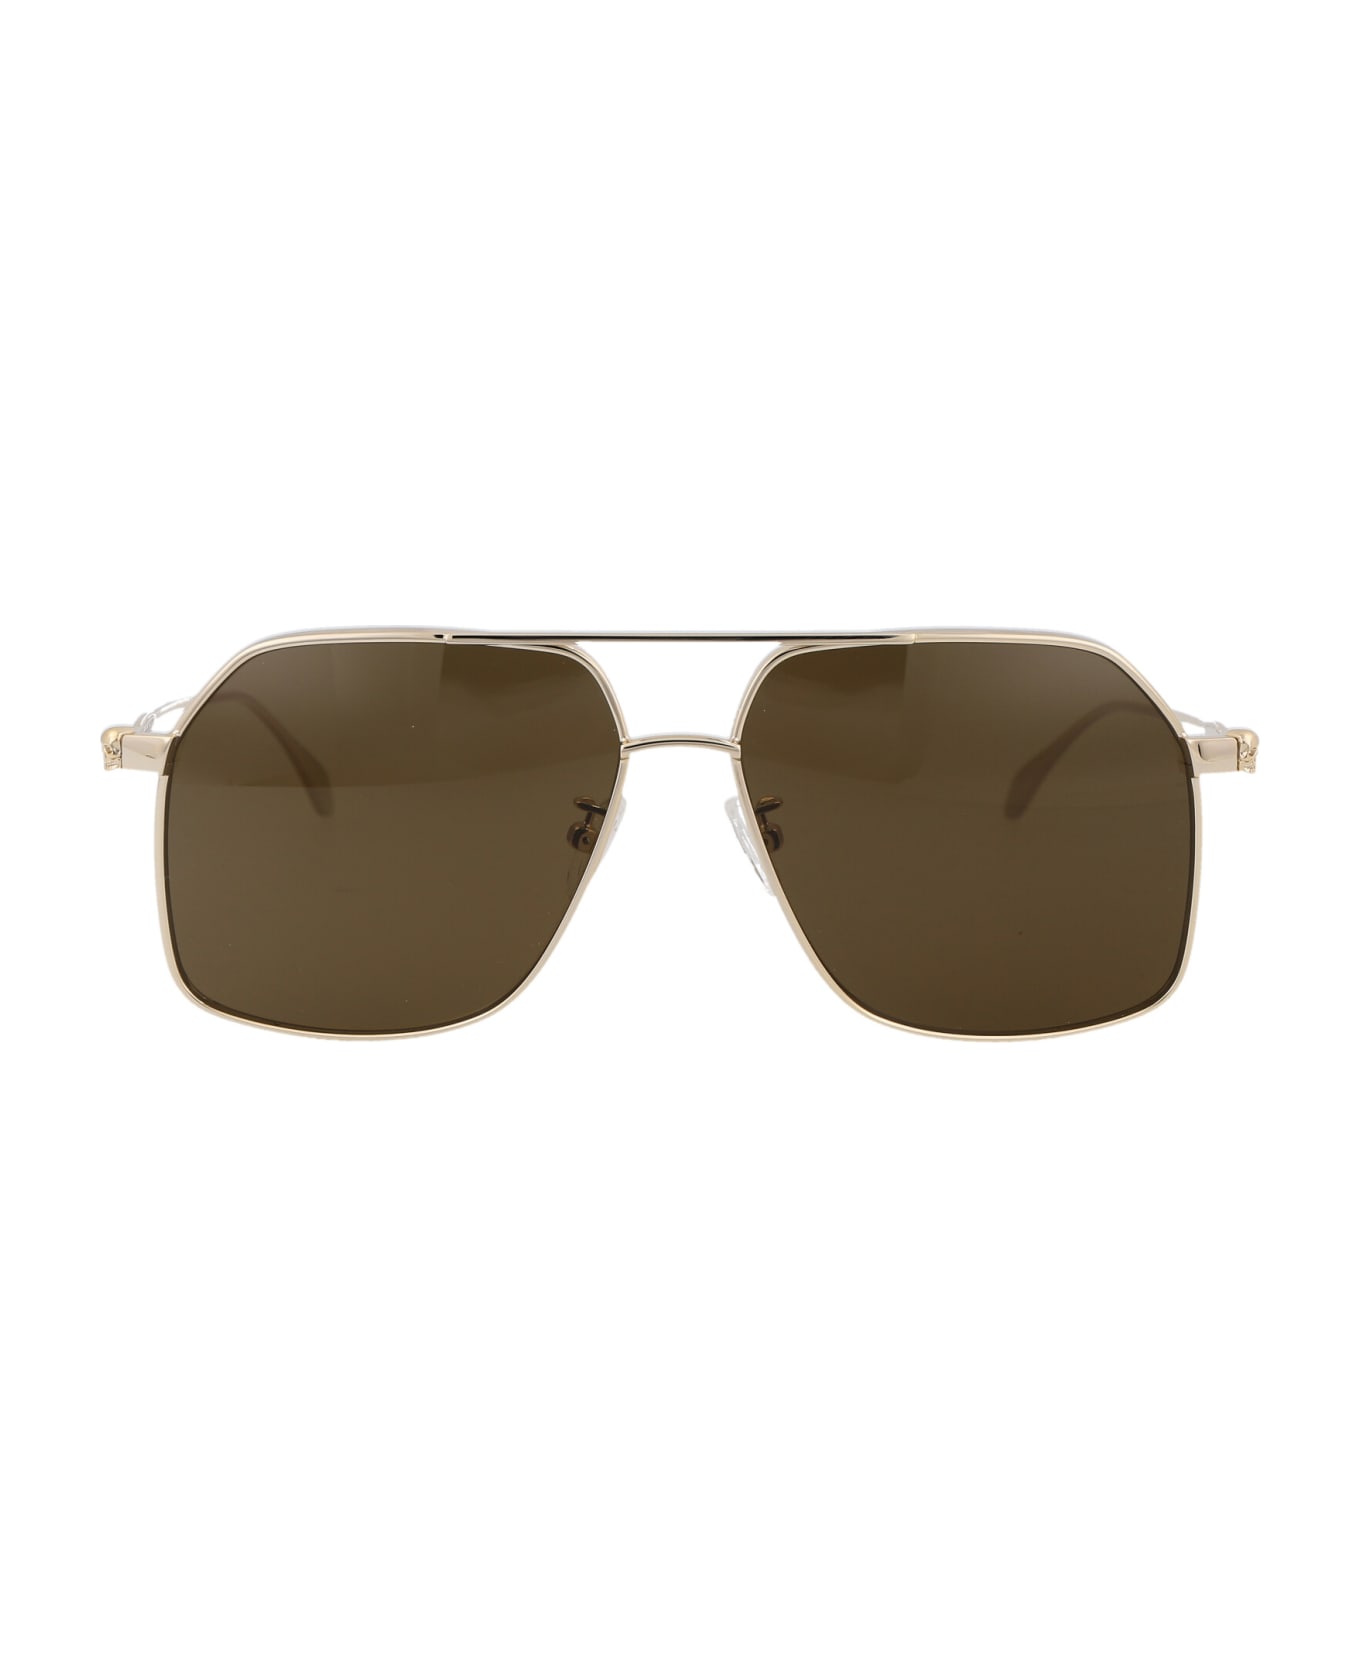 Alexander McQueen Eyewear Am0372s Sunglasses - 002 GOLD GOLD BROWN